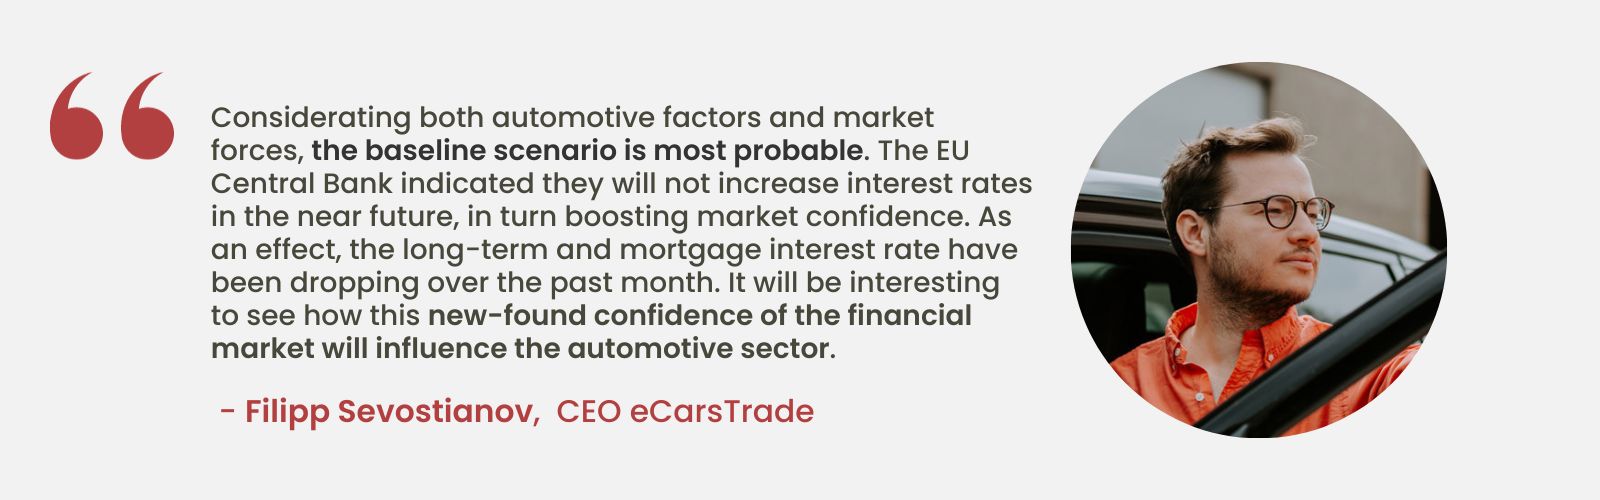 Deskundige analyse door Filipp Sevostianov, CEO van eCarsTrade, waarin de impact van stabiele EU-rentetarieven op het marktvertrouwen en de potentiële effecten op de auto-industrie worden besproken.